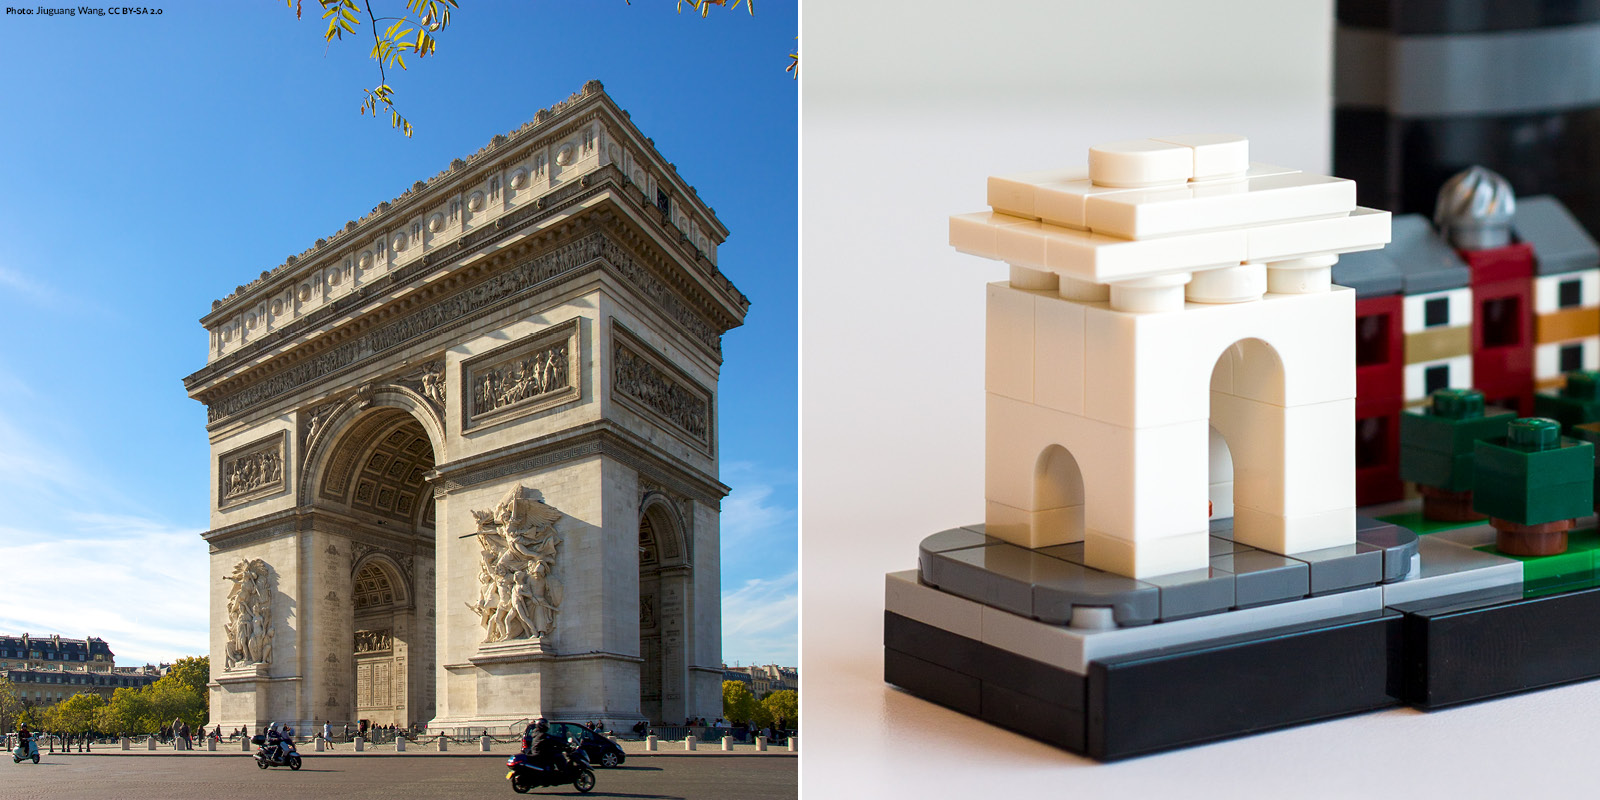 21044 Lego Architecture Paris – Brickinbad